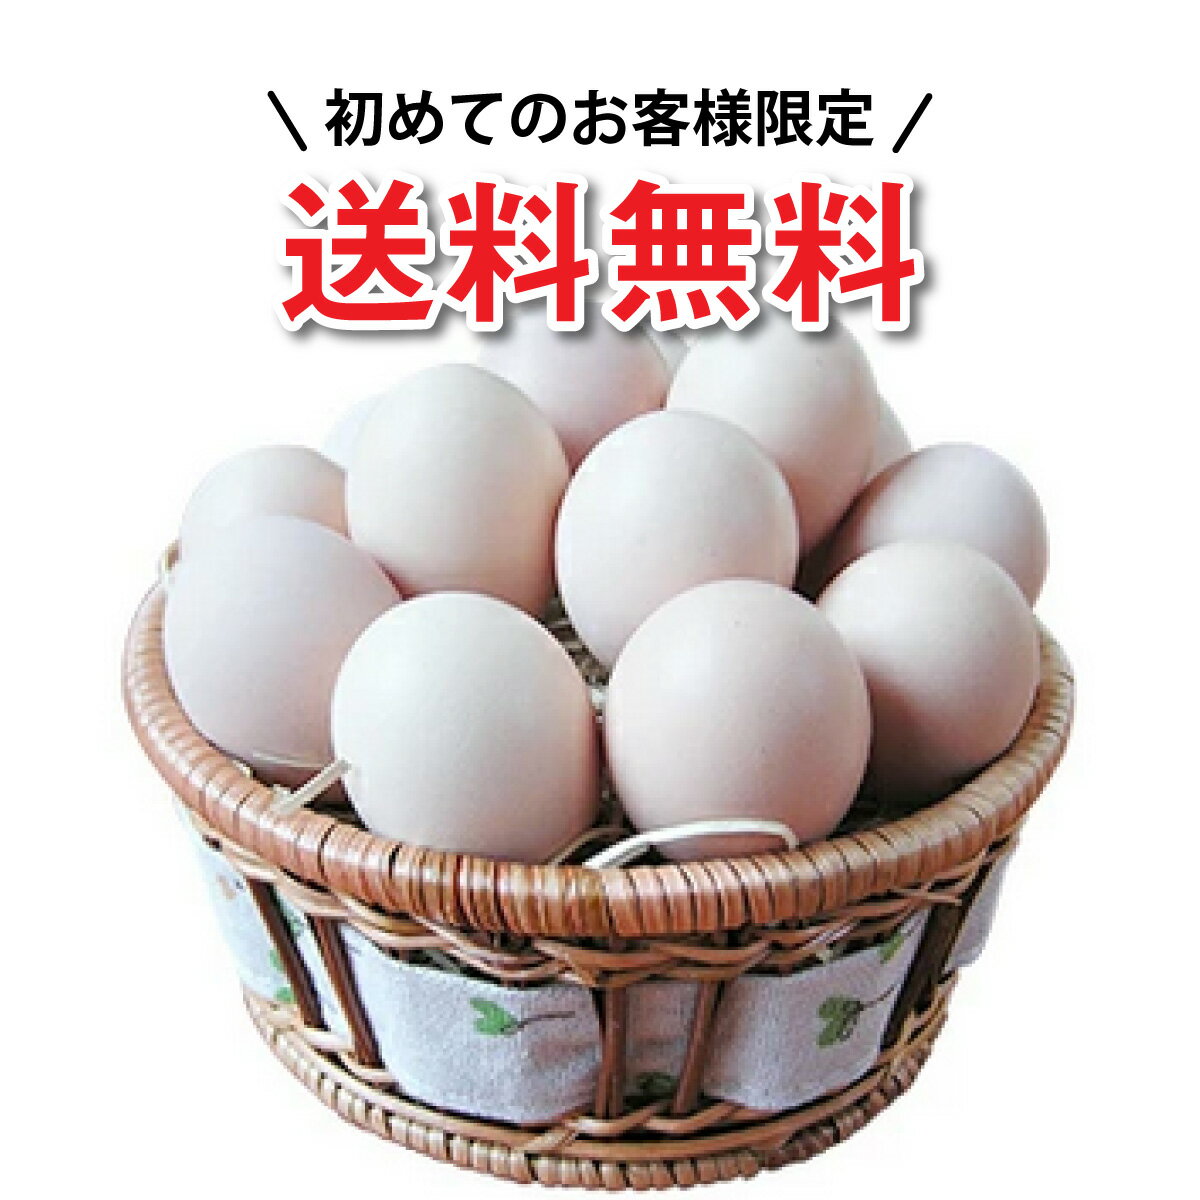 烏骨鶏本舗 烏骨鶏卵モールド 10個入り×1箱 岐阜県 土産 人気 希少な烏骨鶏の卵 ビタミン・ミネラル・コリン